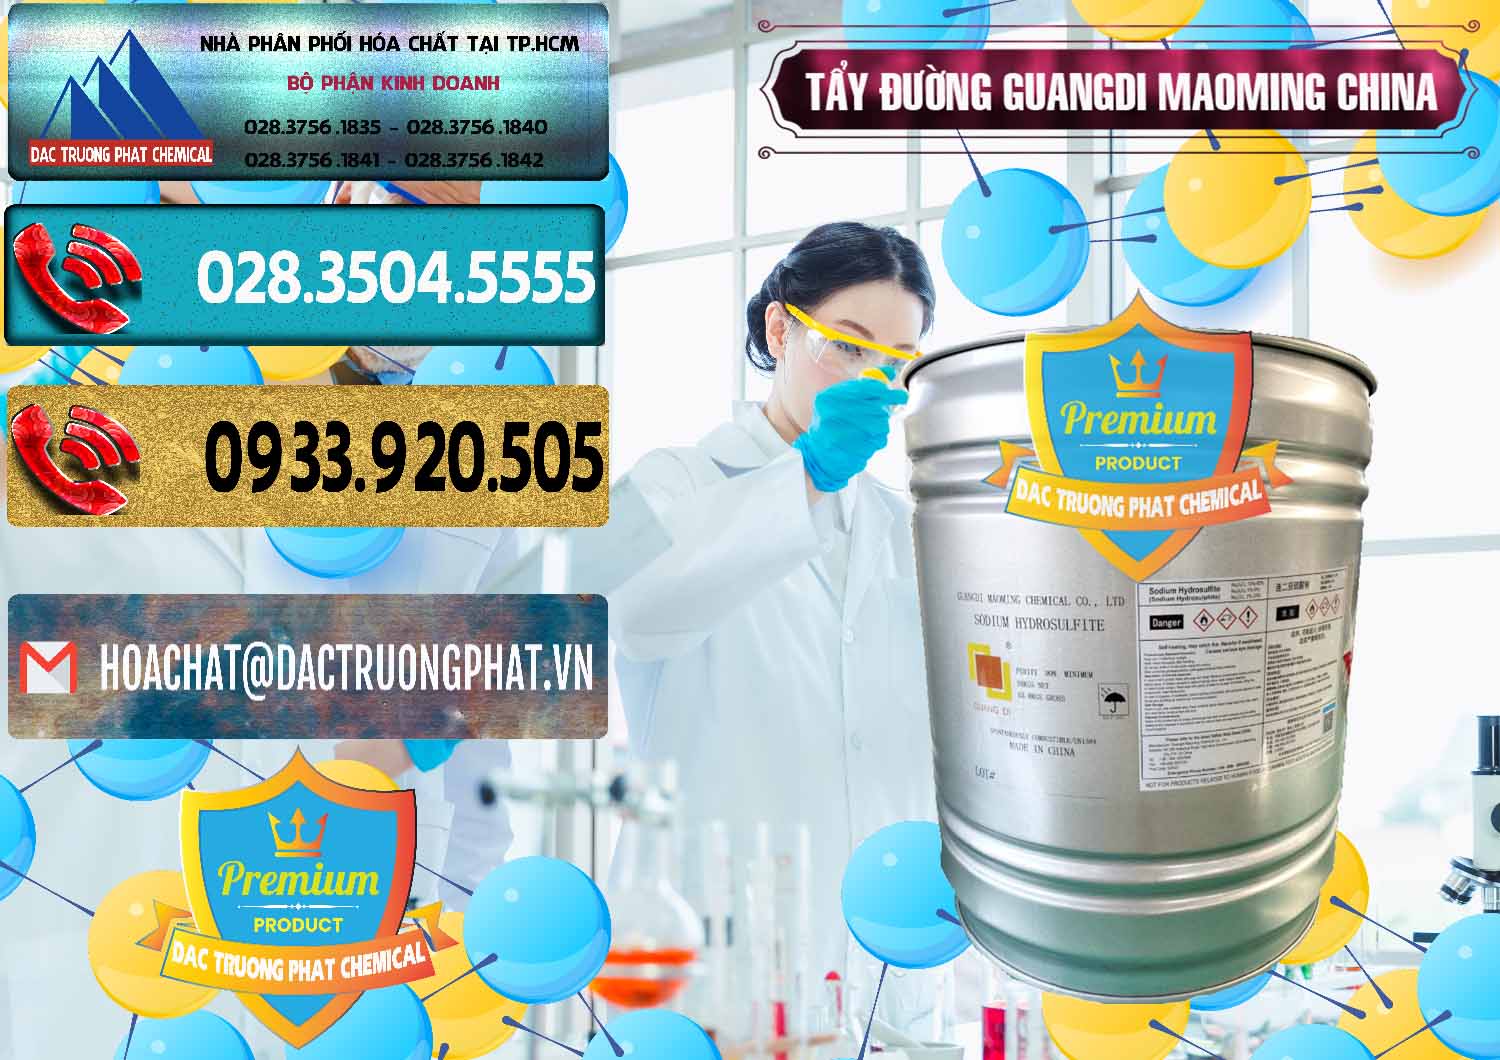 Cty chuyên bán - phân phối Tẩy Đường - NA2S2O4 Guangdi Maoming Thùng Xám Trung Quốc China - 0402 - Phân phối ( cung ứng ) hóa chất tại TP.HCM - hoachatdetnhuom.com